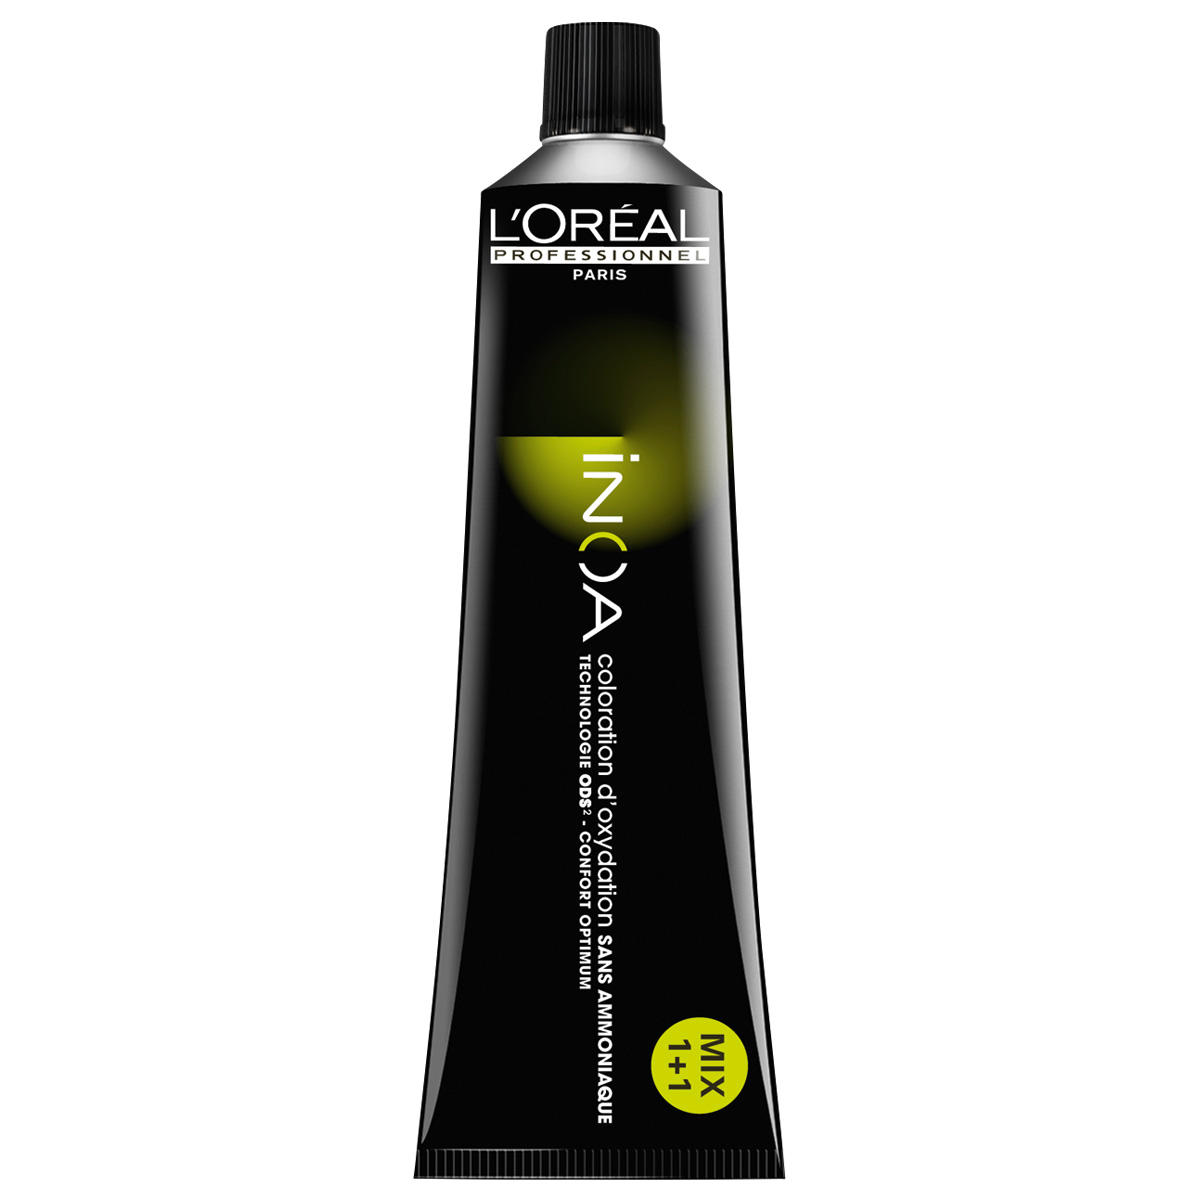 L'Oréal Professionnel Paris Coloration 6,0 blond foncé intense, Tube 60 ml